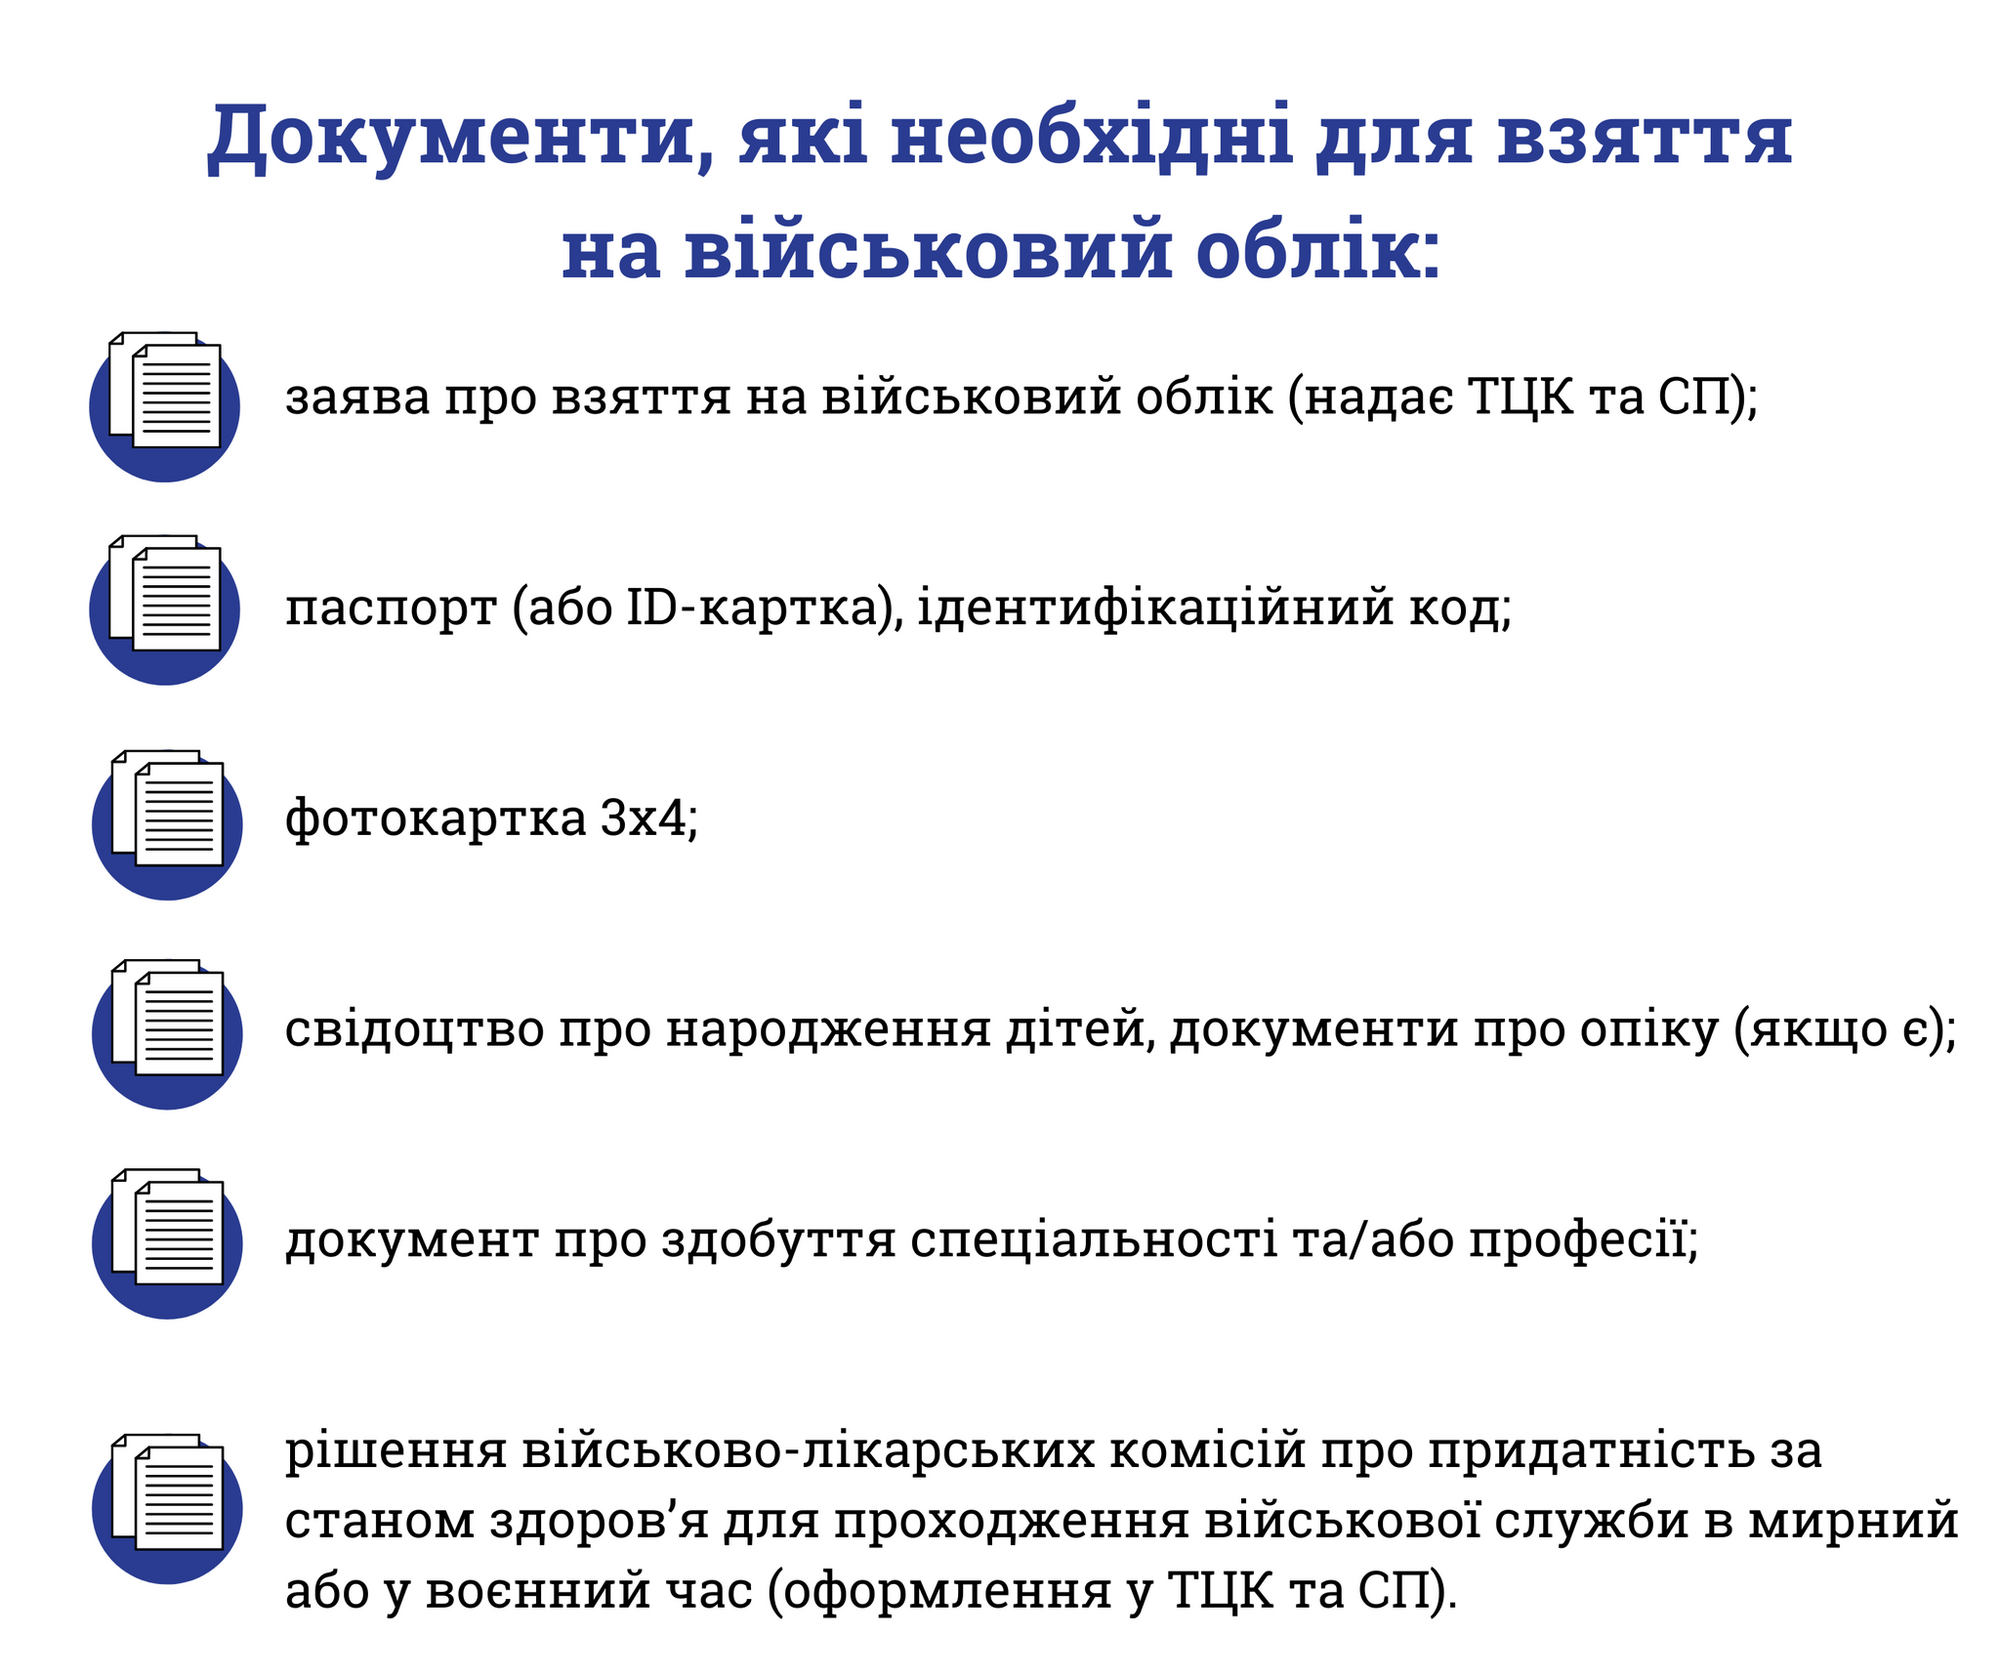 На Официальной странице Управления стратегических коммуникаций Аппарата Главнокомандующего Вооруженными Силами Украины опубликовали разъяснения.